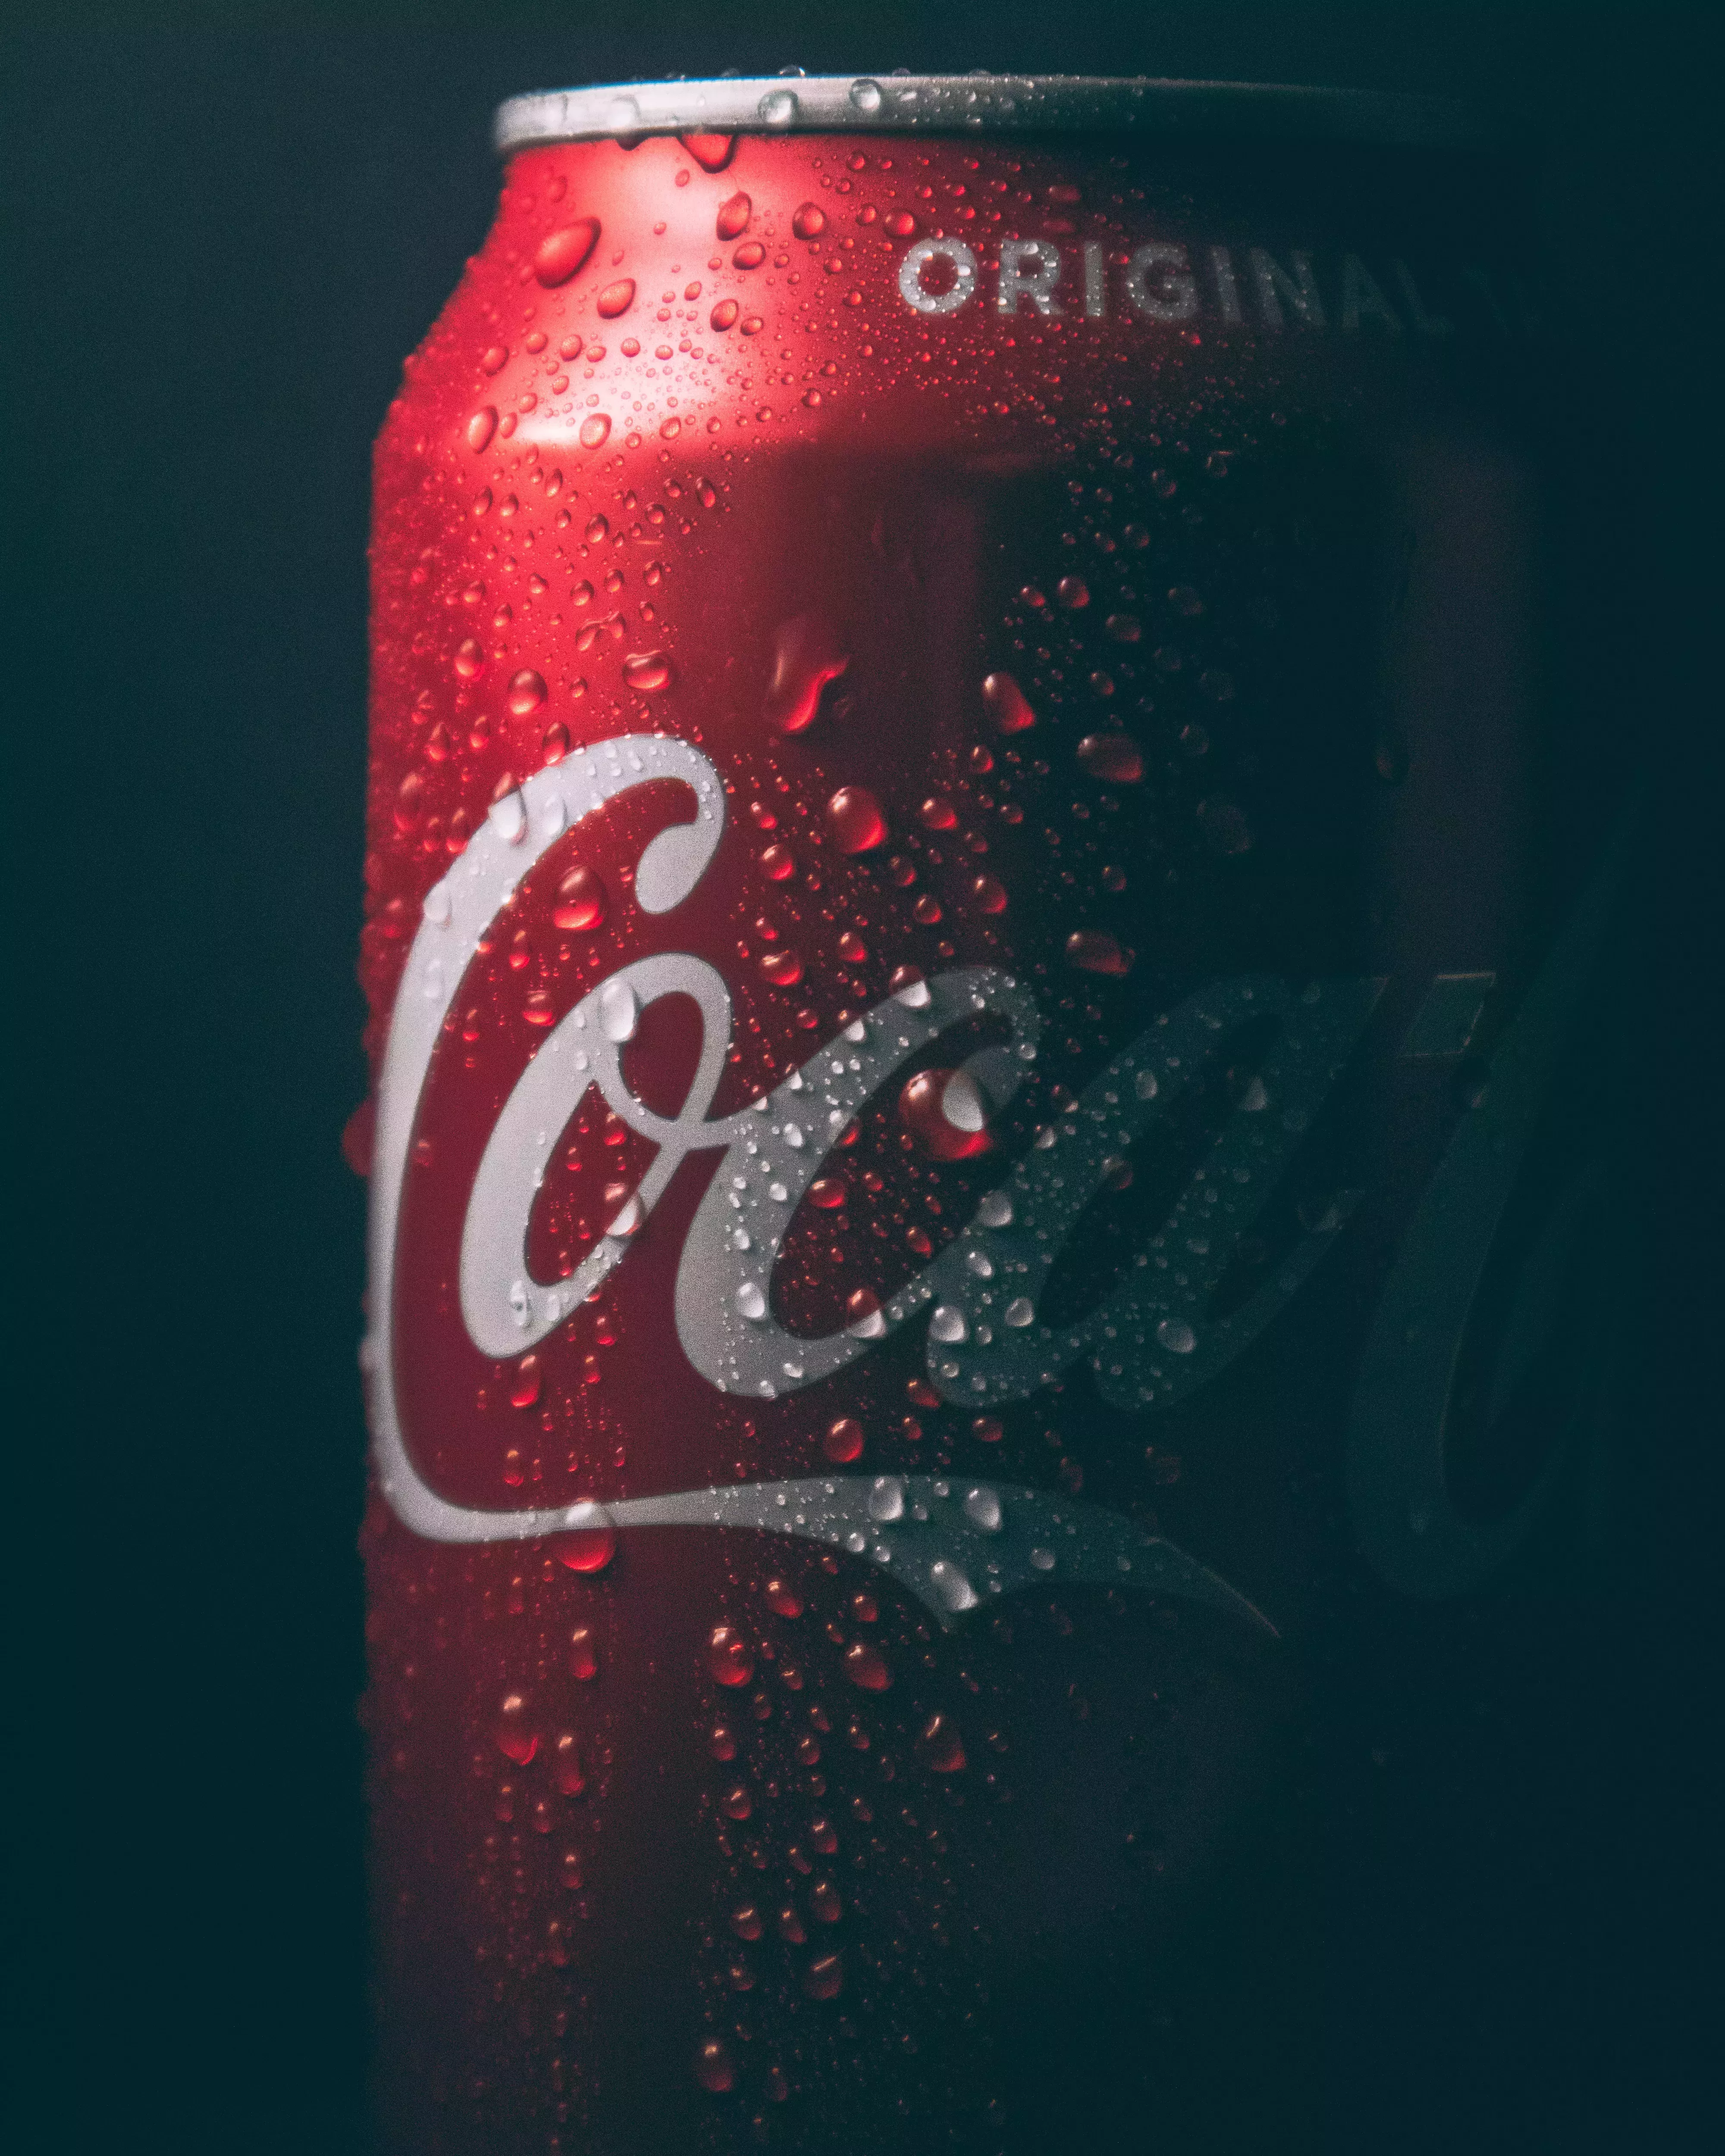 En un mundo de bebidas: Coca-Cola contra Dasani' 